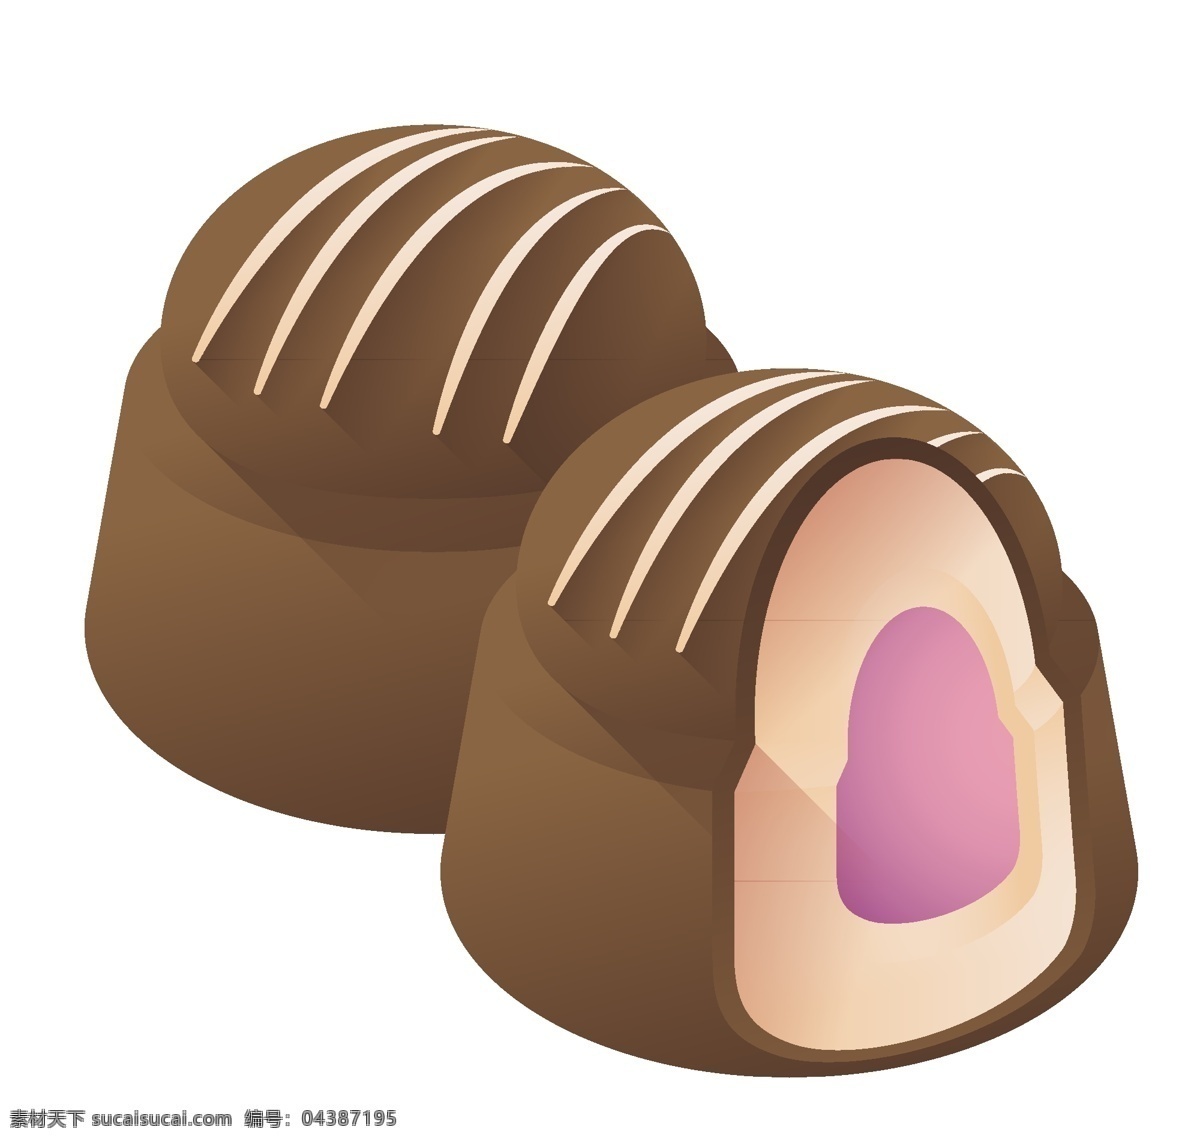 圆形 立体 巧克力 插图 两个巧克力 圆形巧克力 立体巧克力 巧克力面包 夹心巧克力 图案设计 精致的巧克力